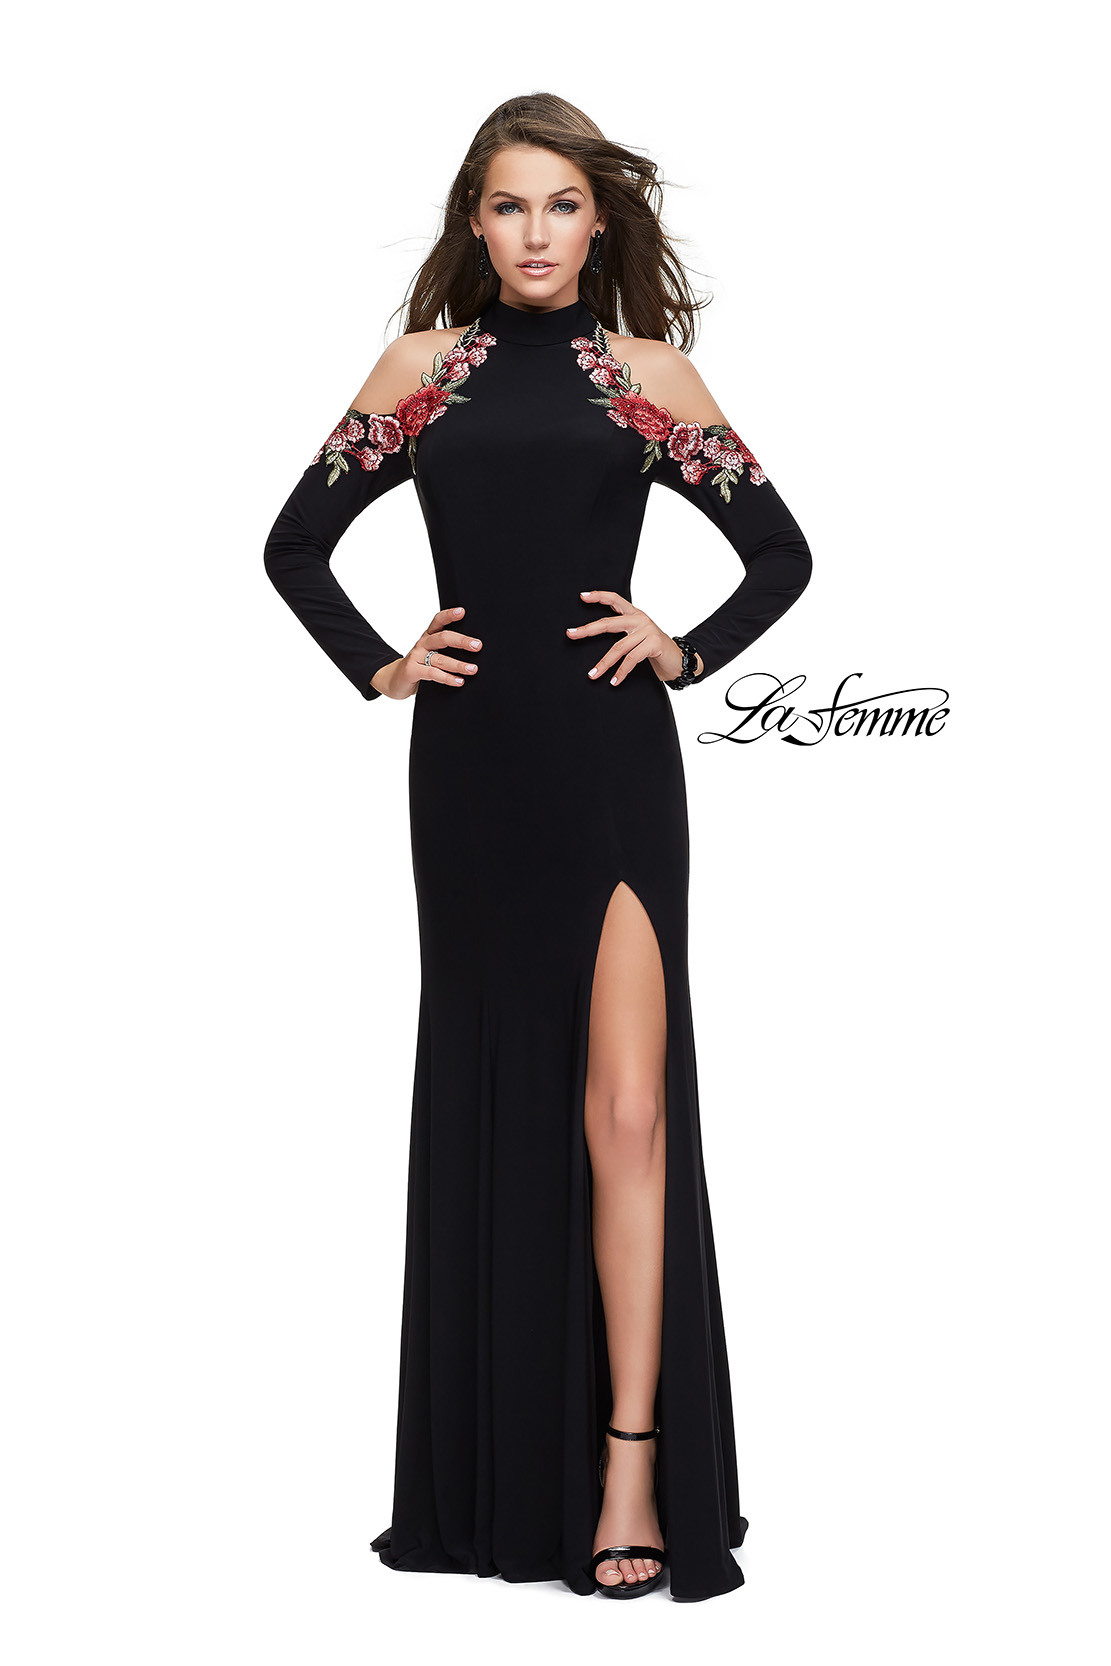 Black Prom Dress with Floral Details on Cold Shoulder by La Femme